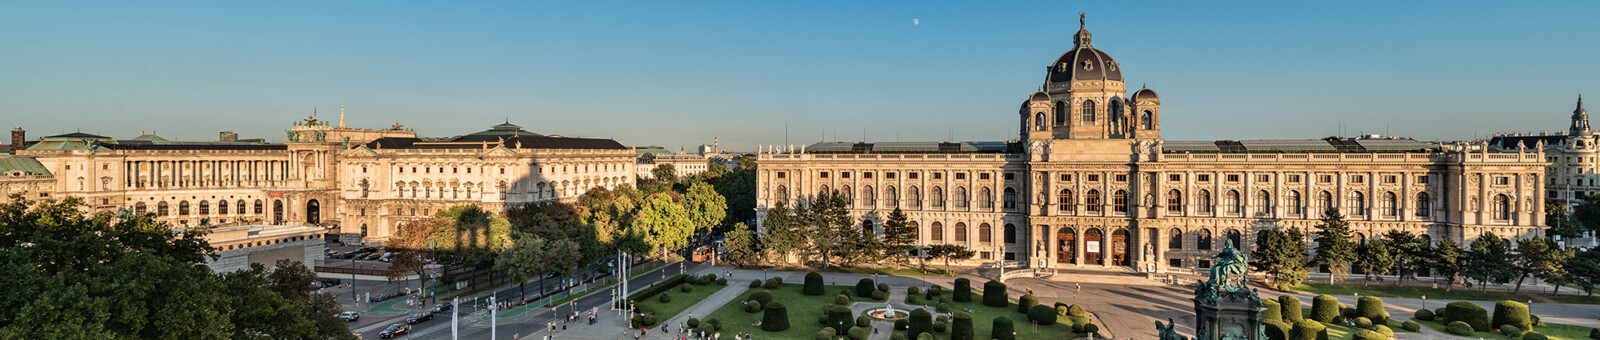     Kunsthistorisches Museum Vienna - Exterior view 